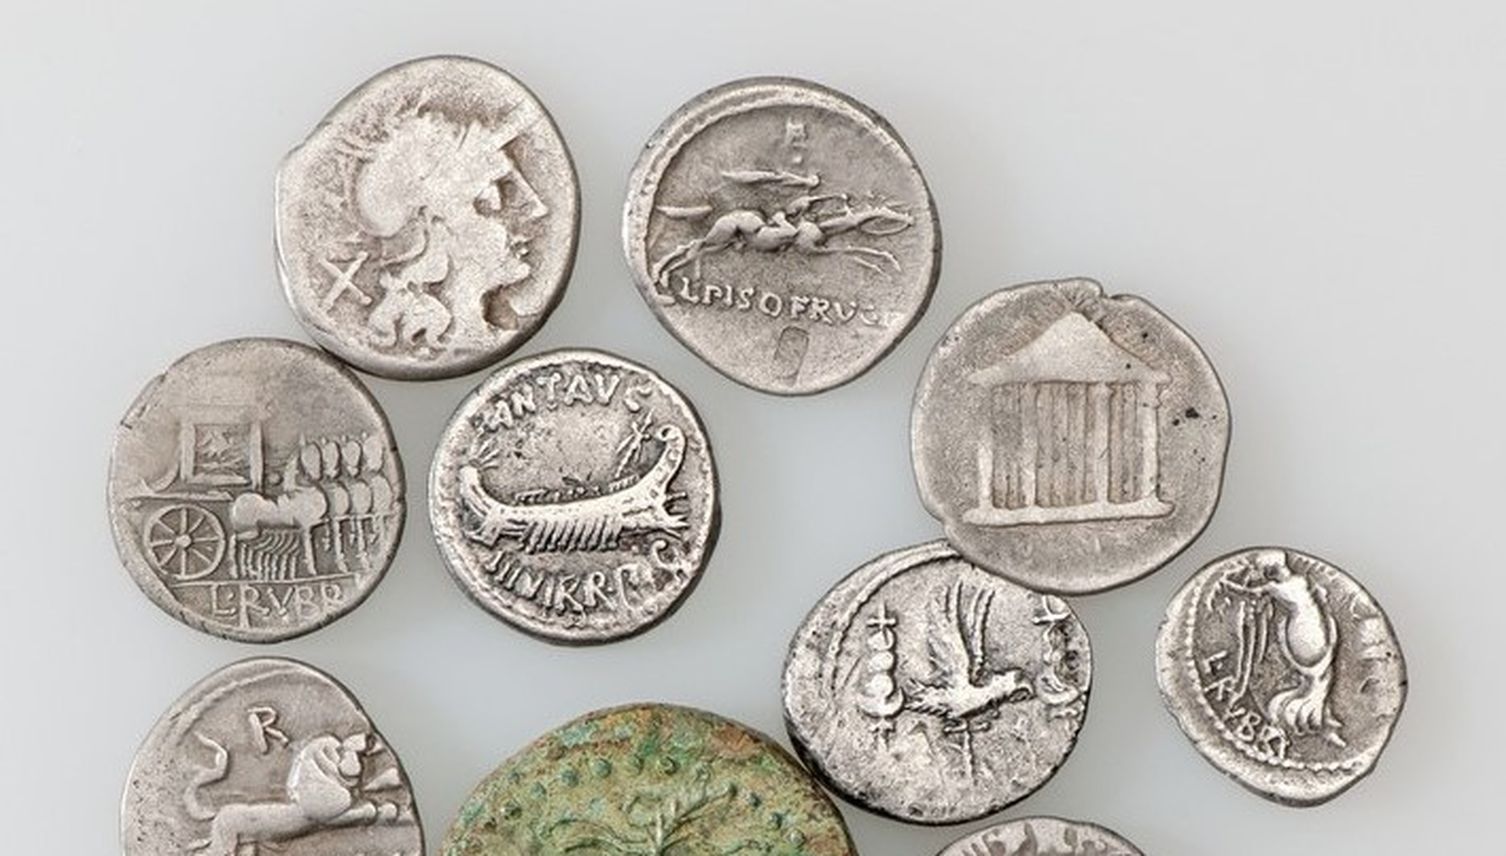 Des Kaisers neue Münzen: Zuger Funde sagen viel aus